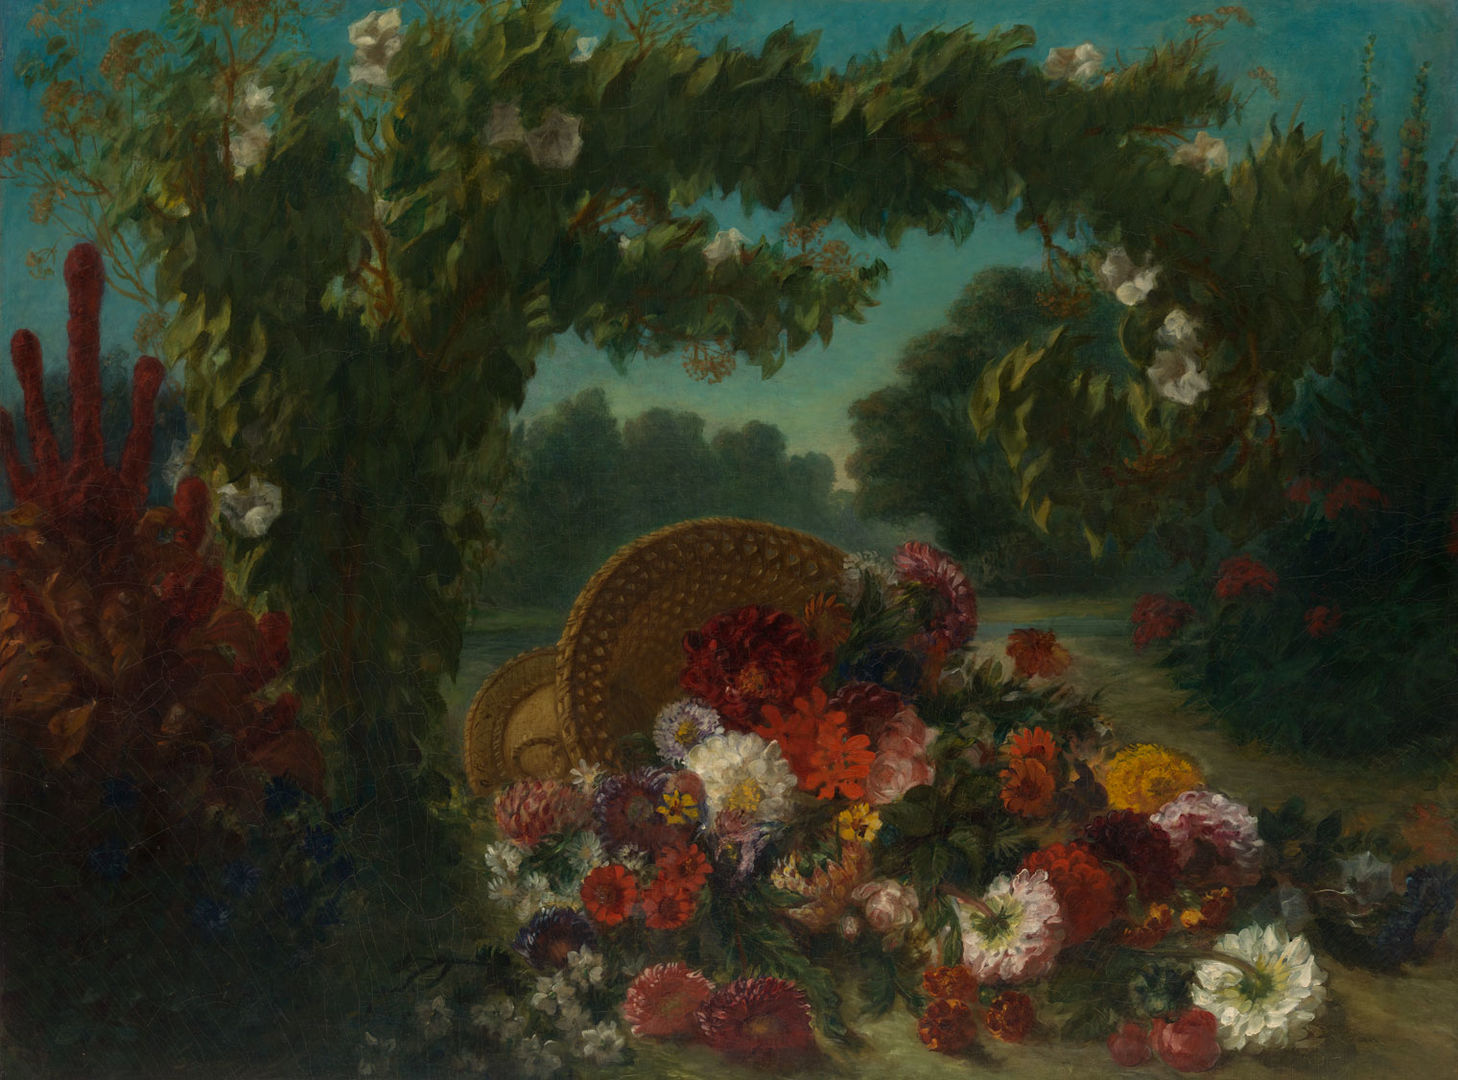 Delacroix painting of a basket of flowers set against a pastoral landscape